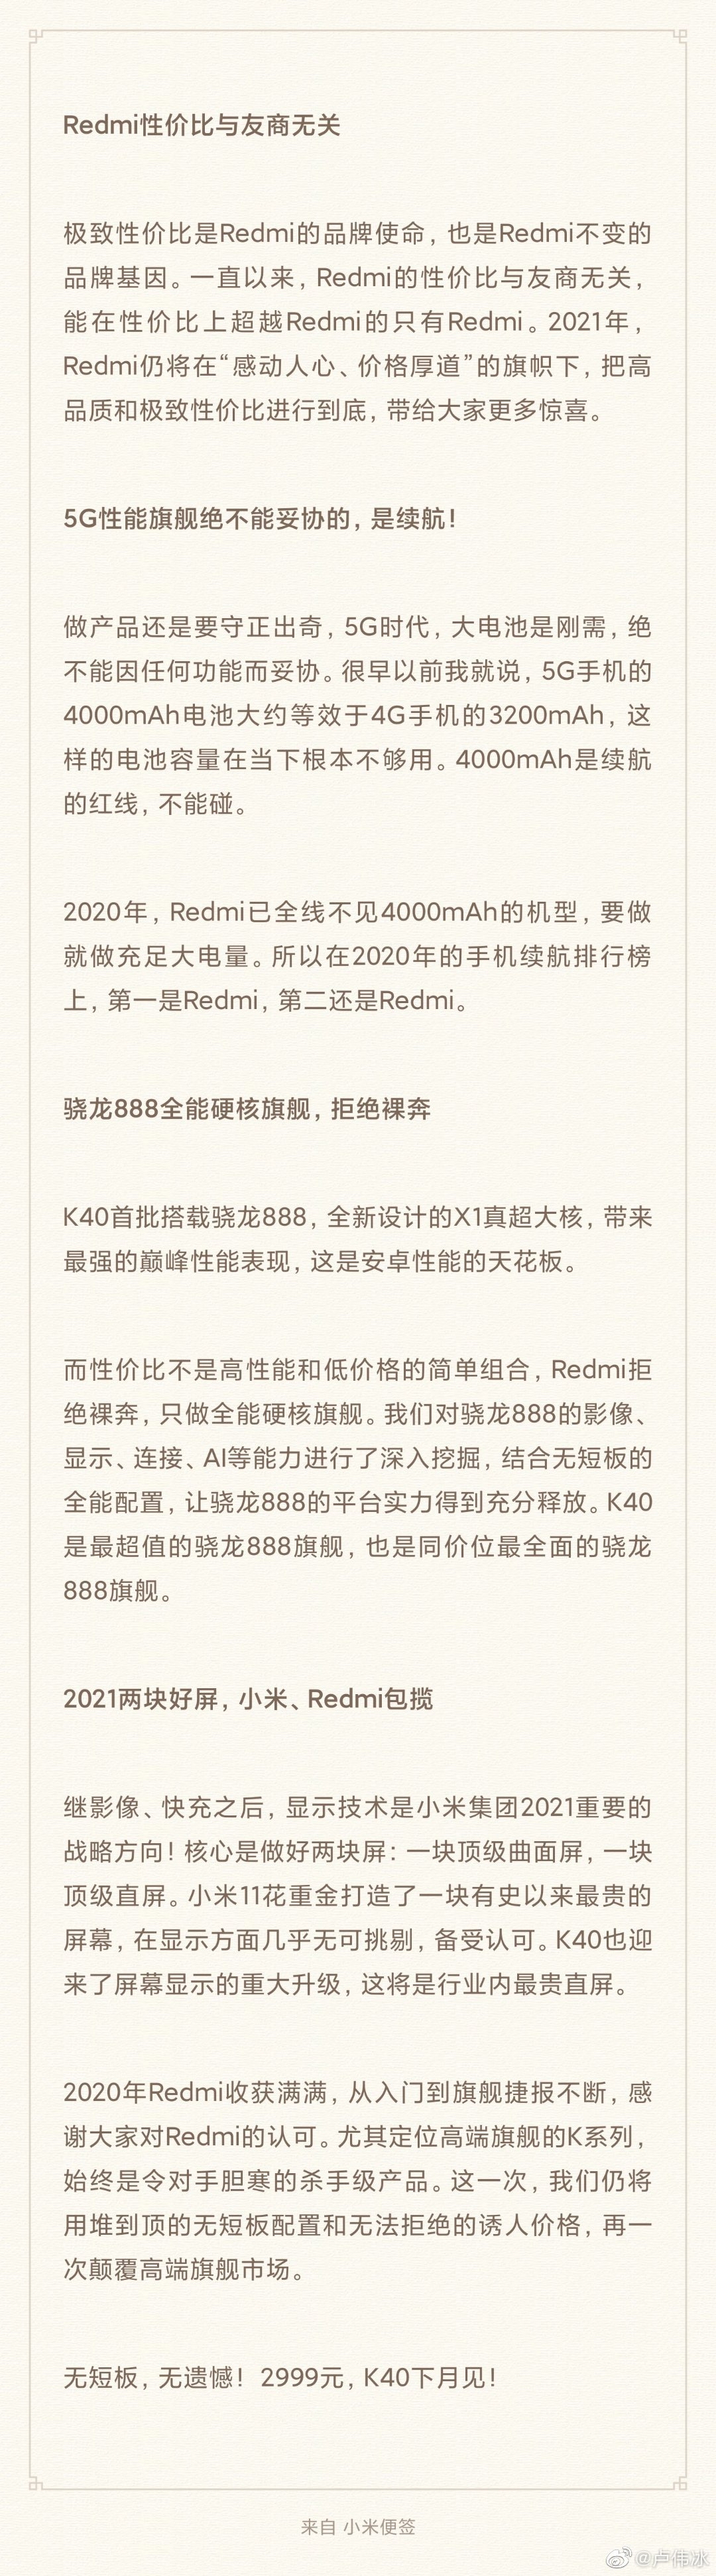 Redmi K40系列仅售2999元 让对手胆寒的杀手级产品